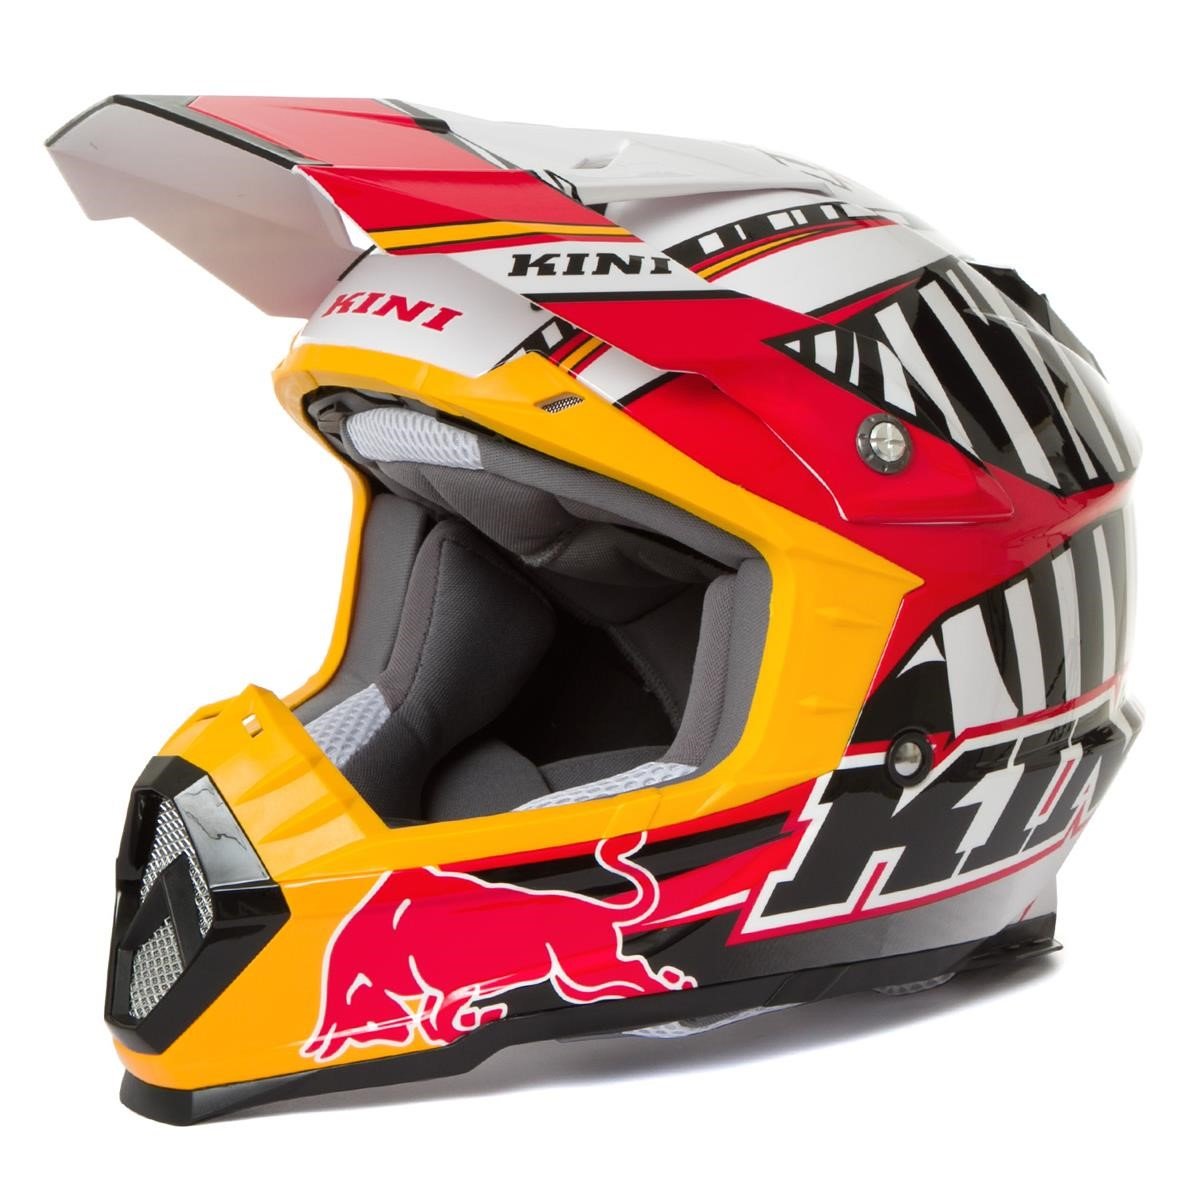 Kini Red Bull Helmet Revolution Black/Red/White